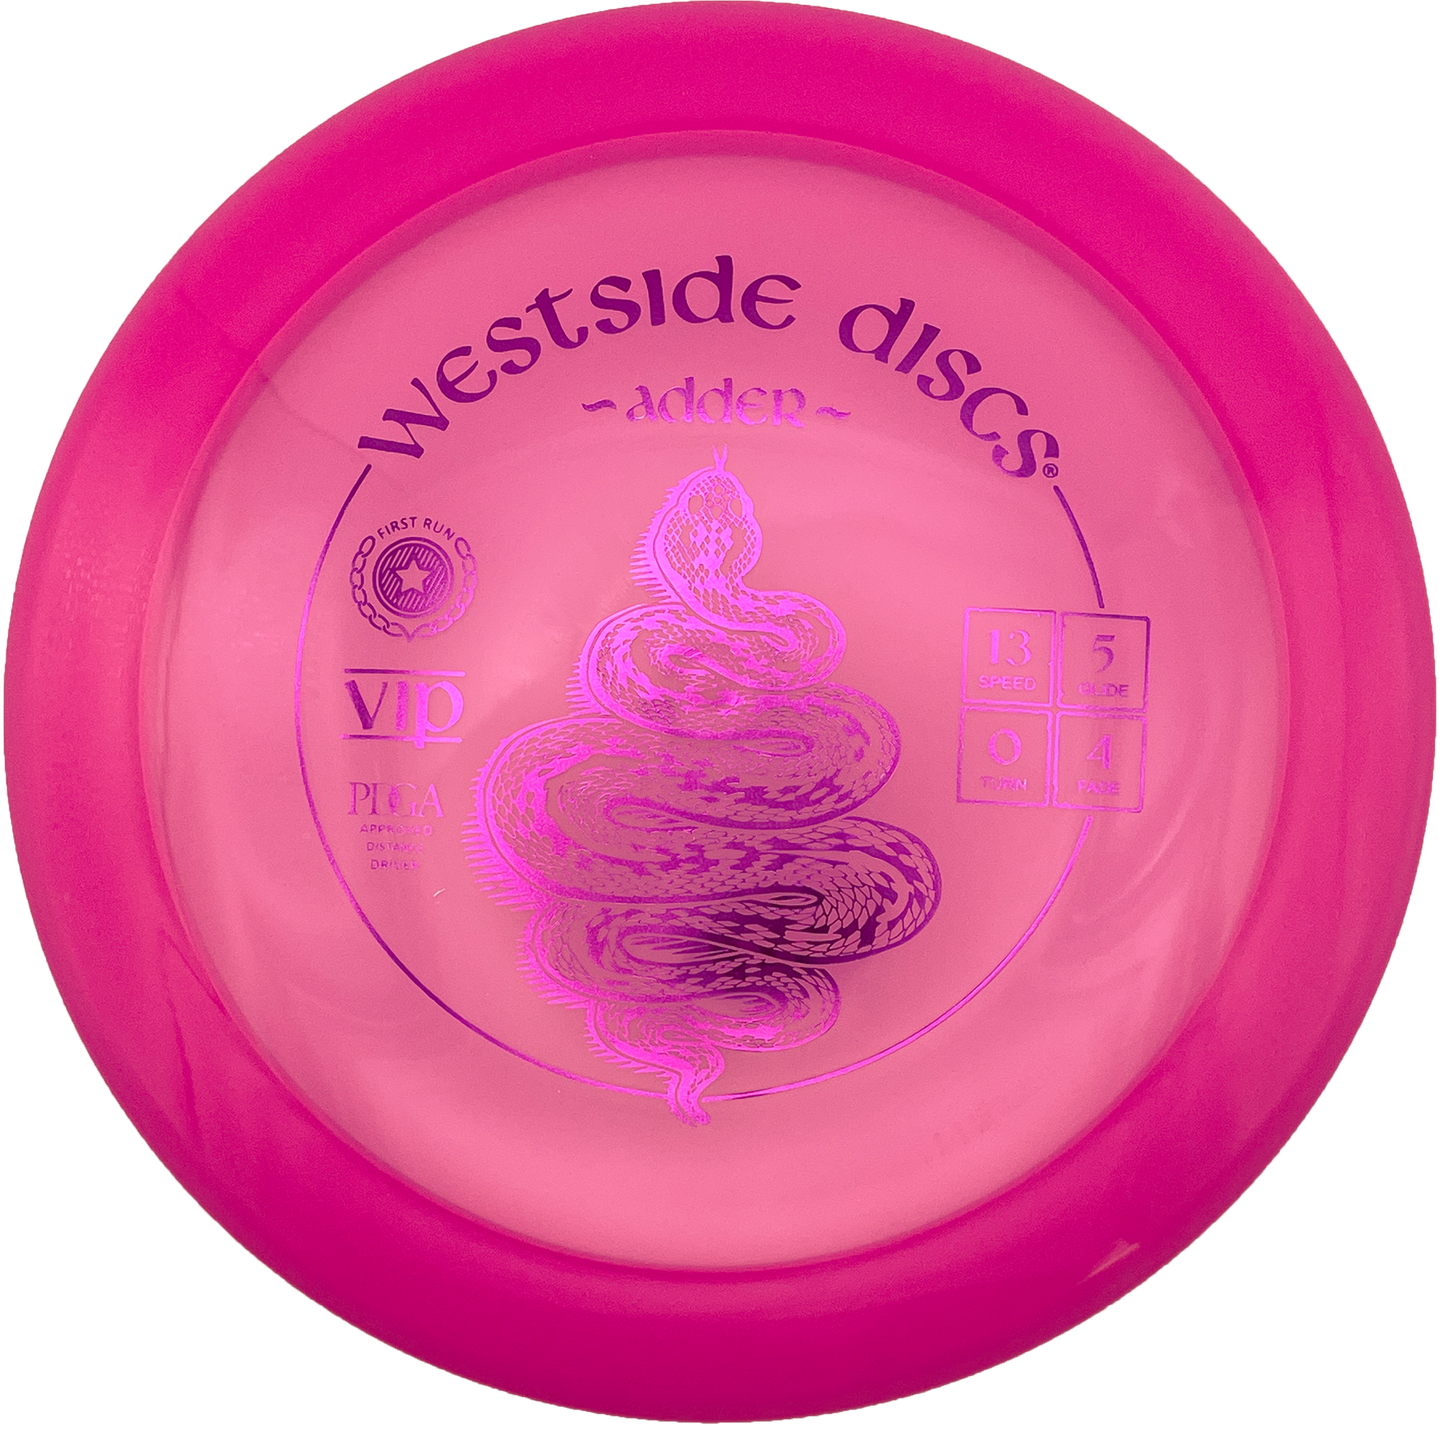 Westside Adder - VIP Line - Pink